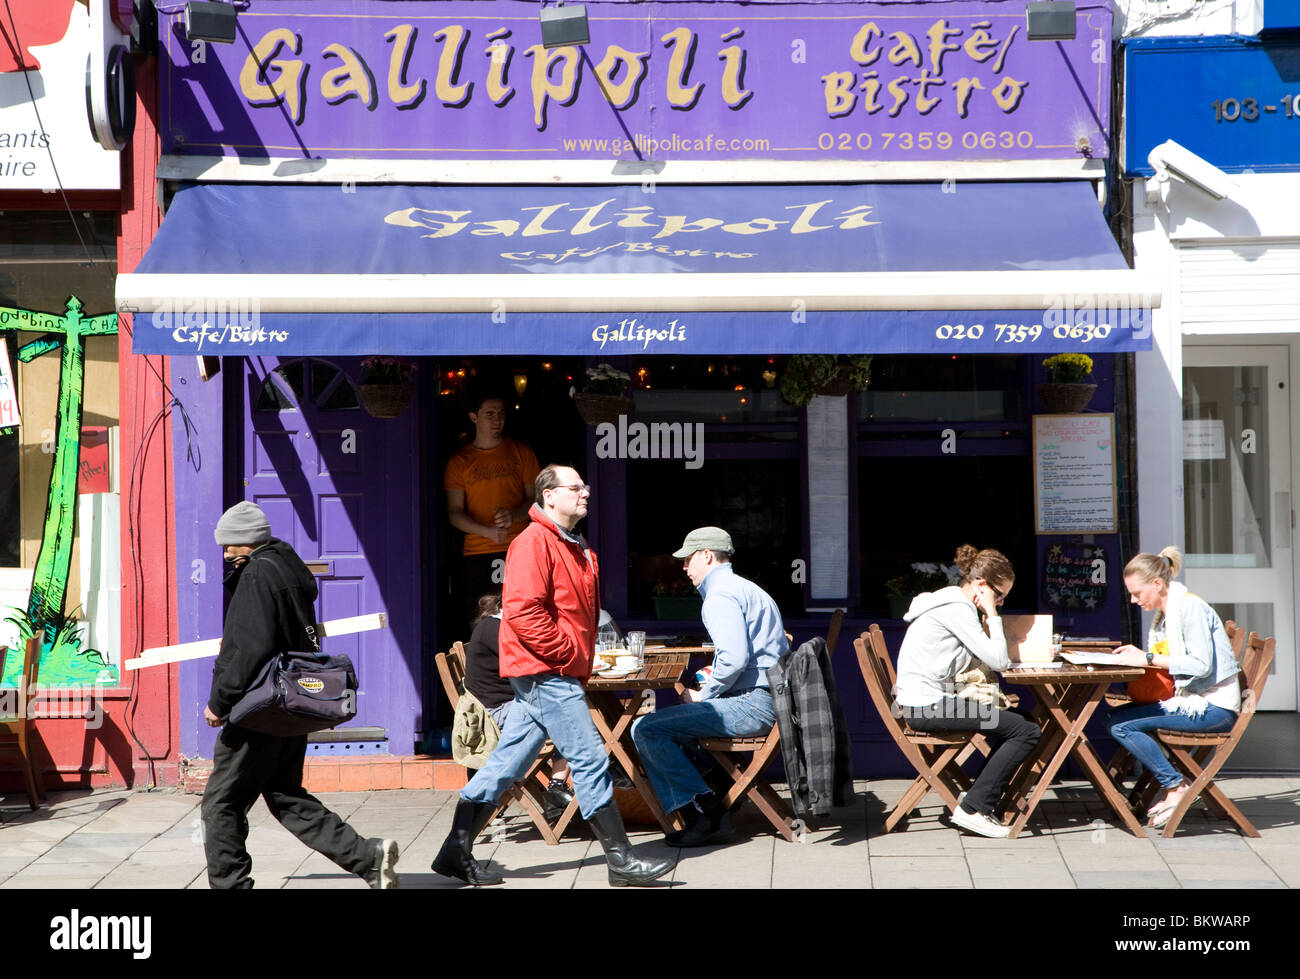 Le restaurant turc de Gallipoli en Upper Street, Islington, Londres Banque D'Images